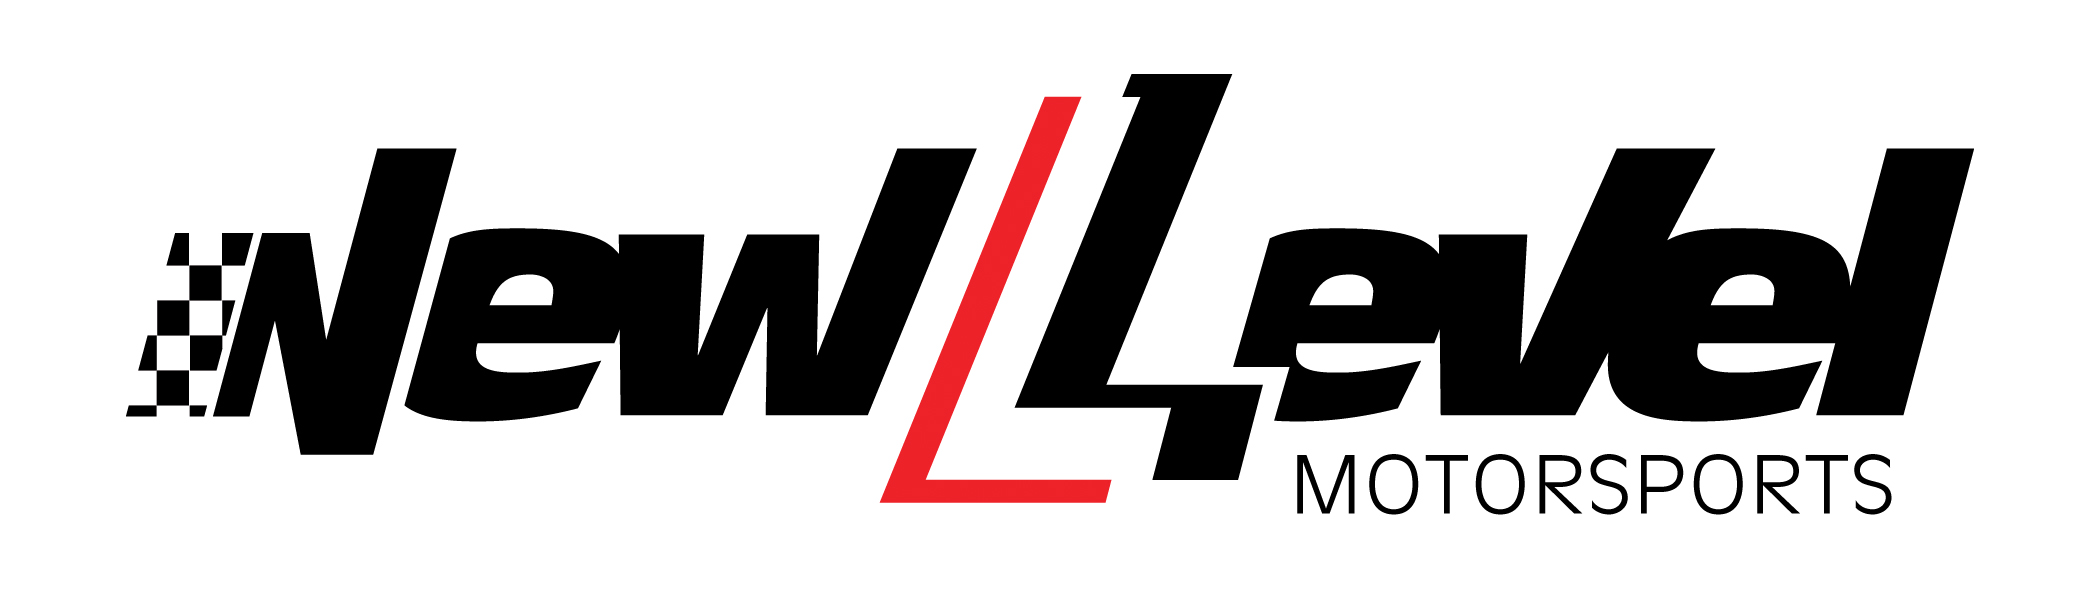 New Level Motorsports logo